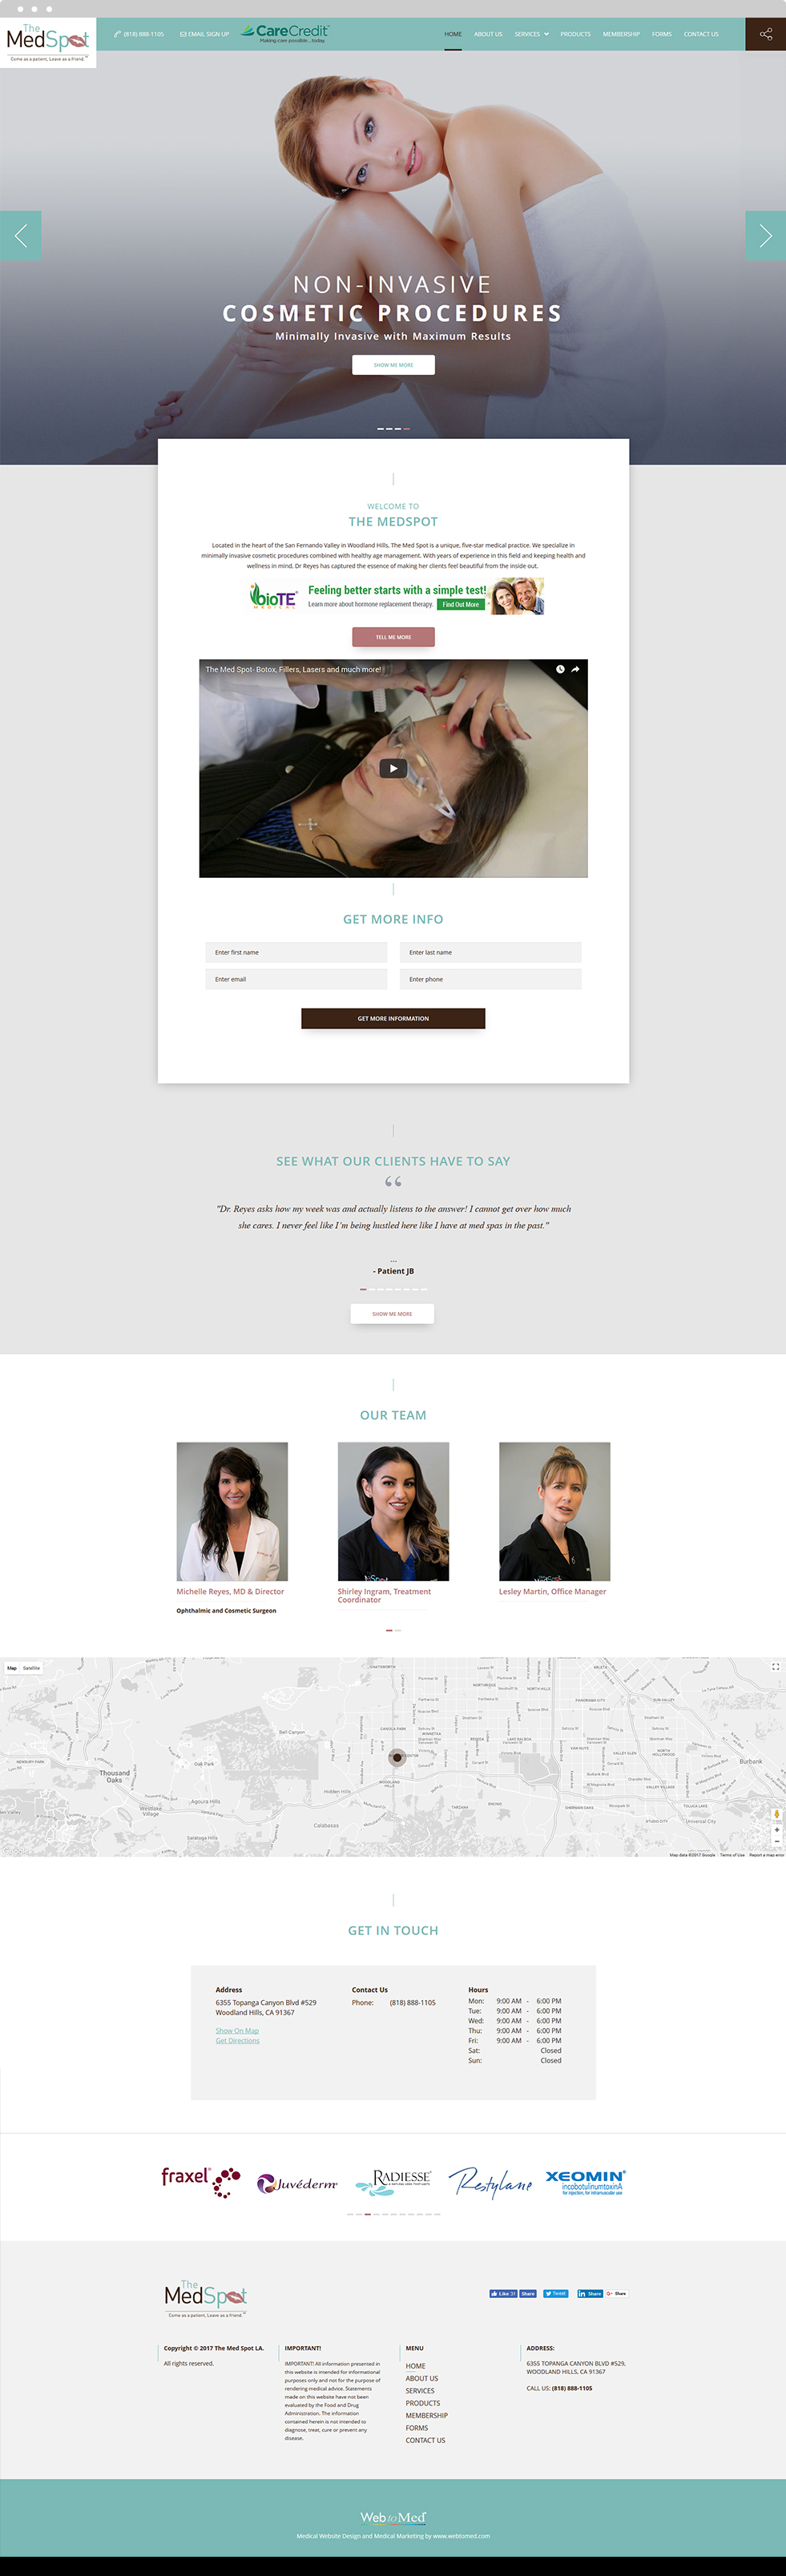 Med Spa Website Design - The Medspot - Homepage